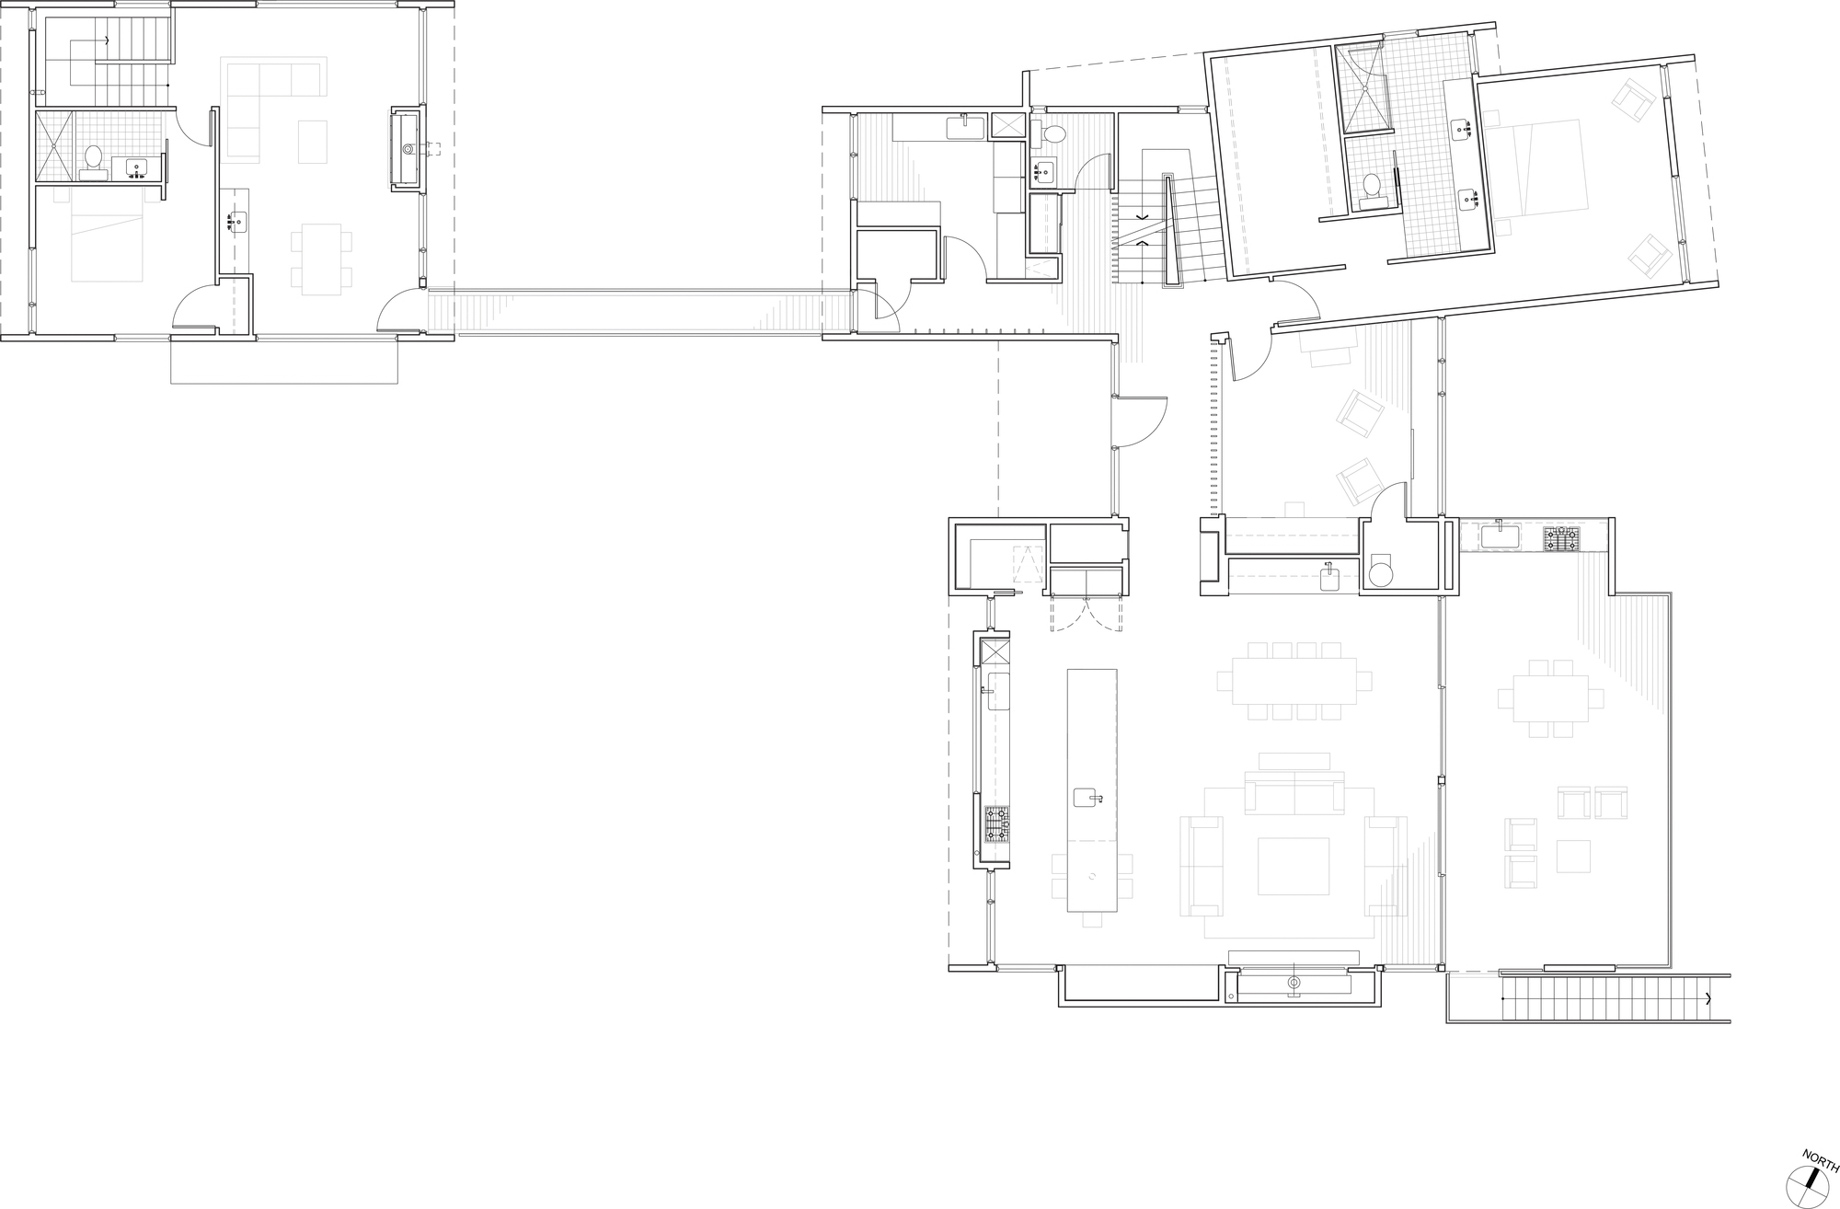 Floor Plan - Cedar Island River Residence - West Linn, OR, USA